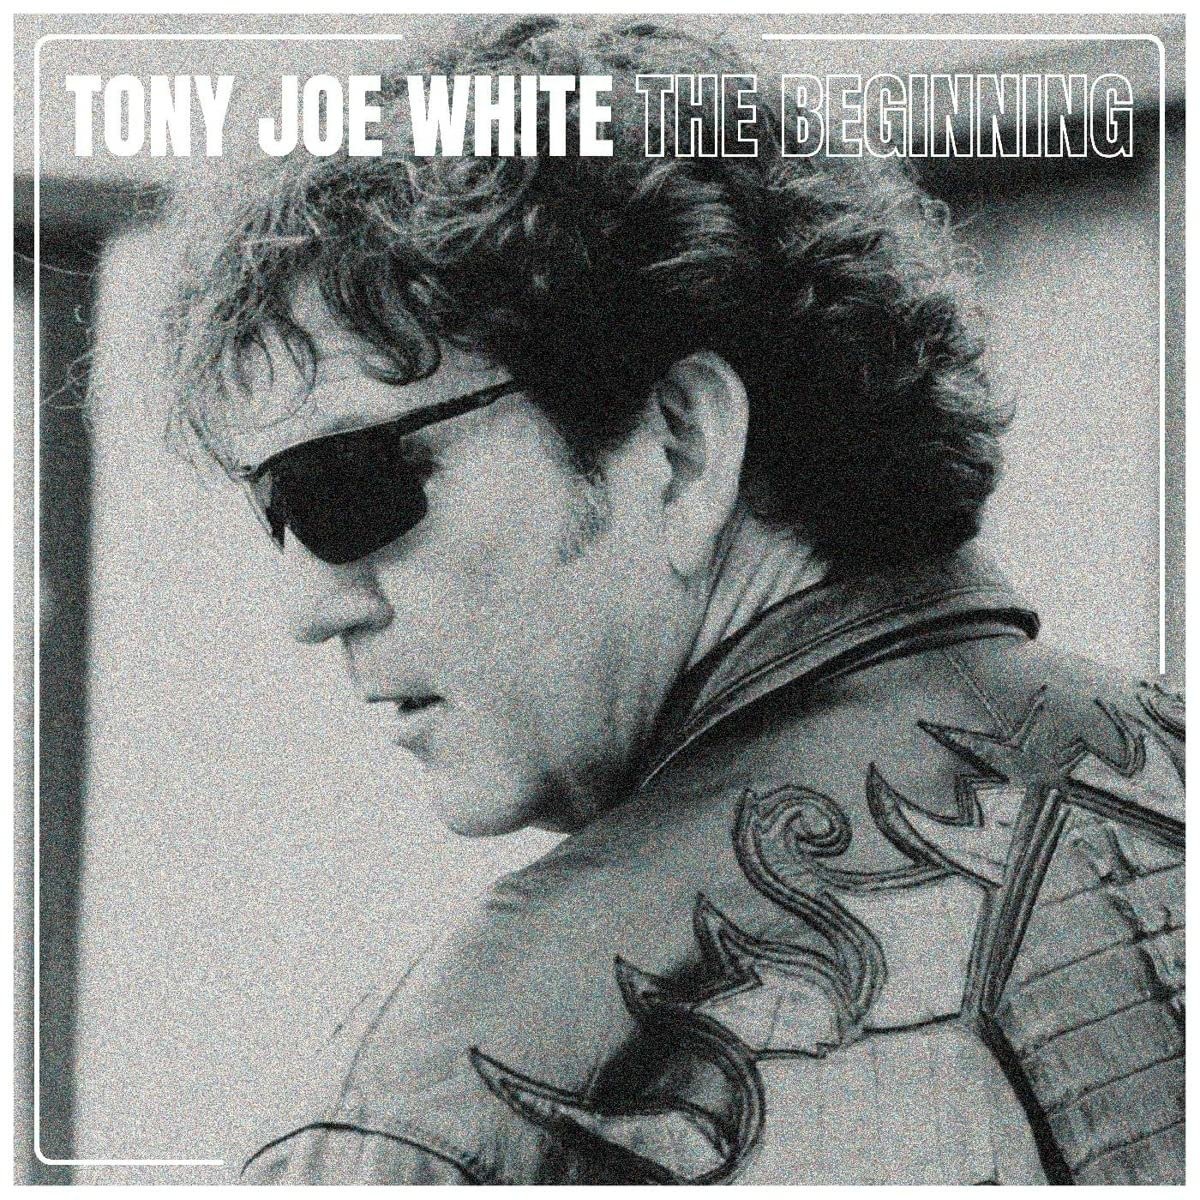 WHITE, TONY JOE - BEGINNING, CD